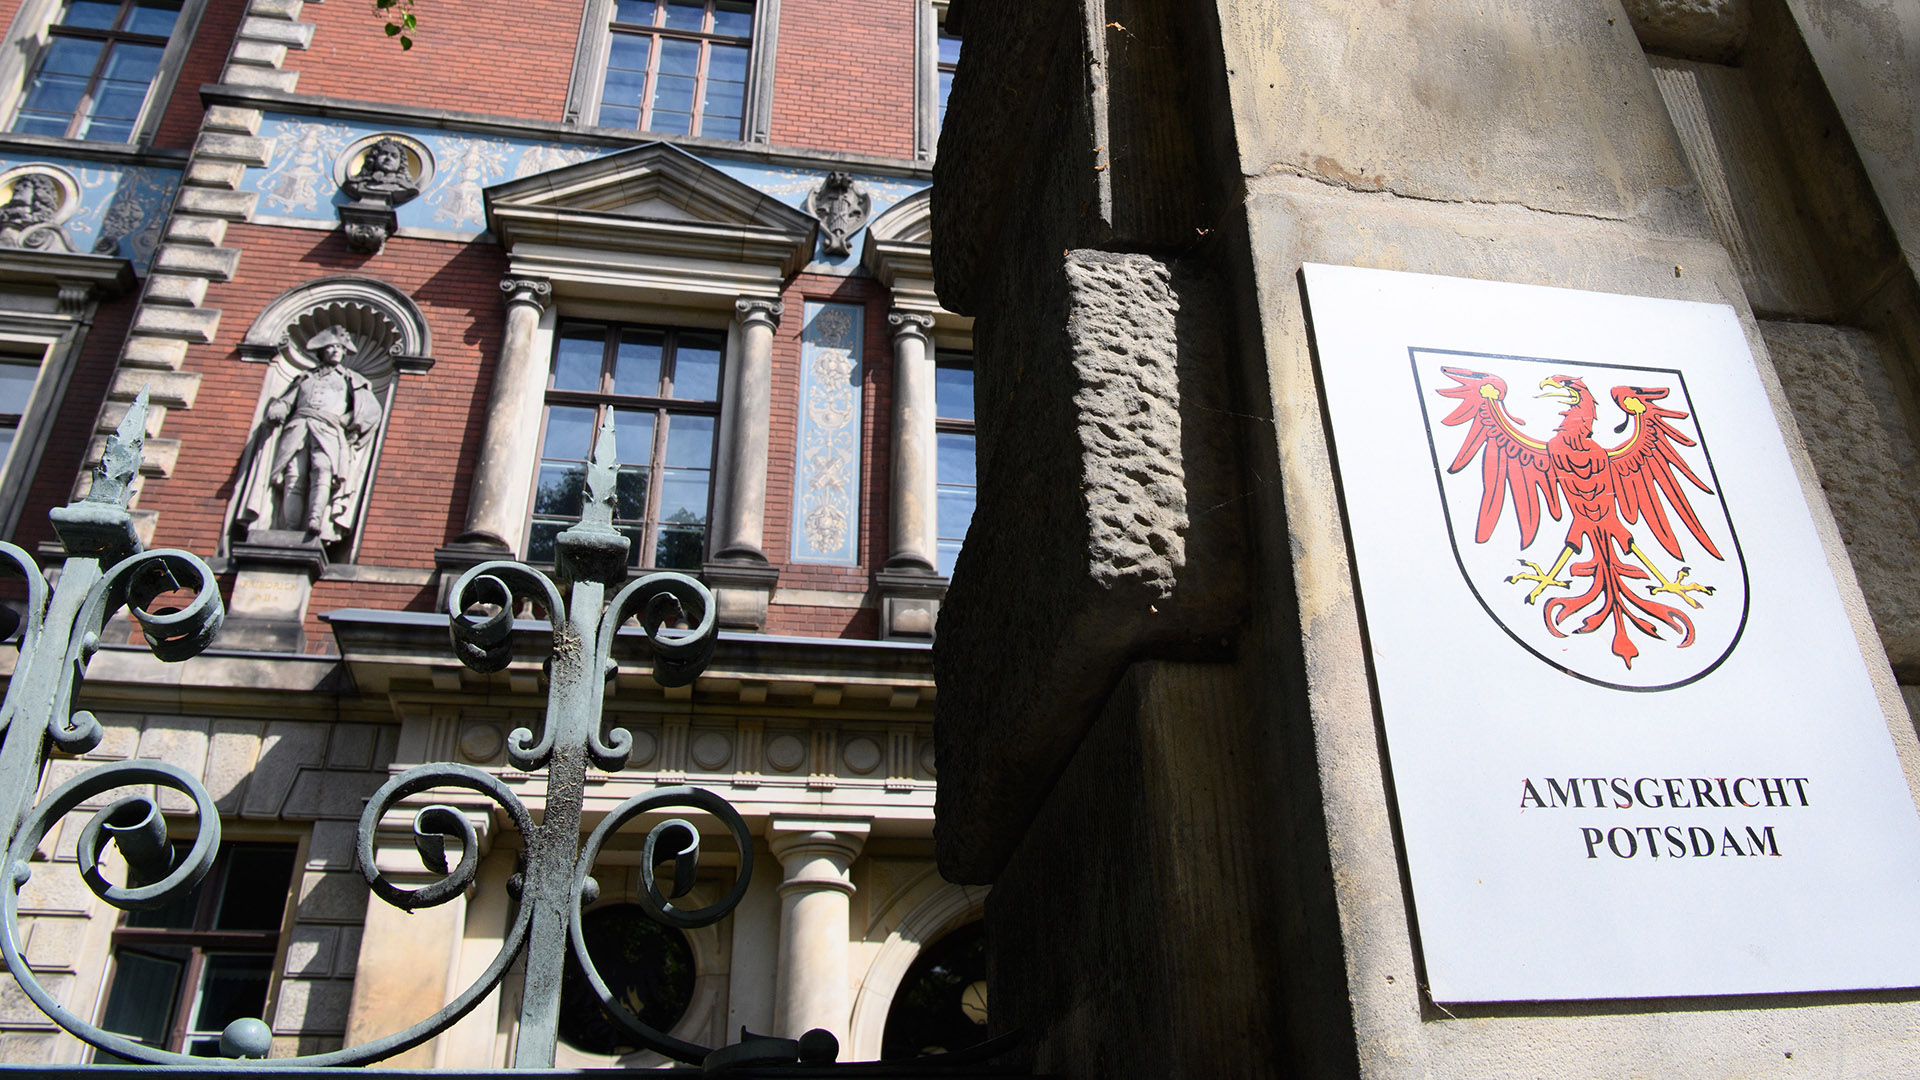 Archivbild: Der Eingang zum Potsdamer Amtsgericht. (Quelle: dpa/Stache)